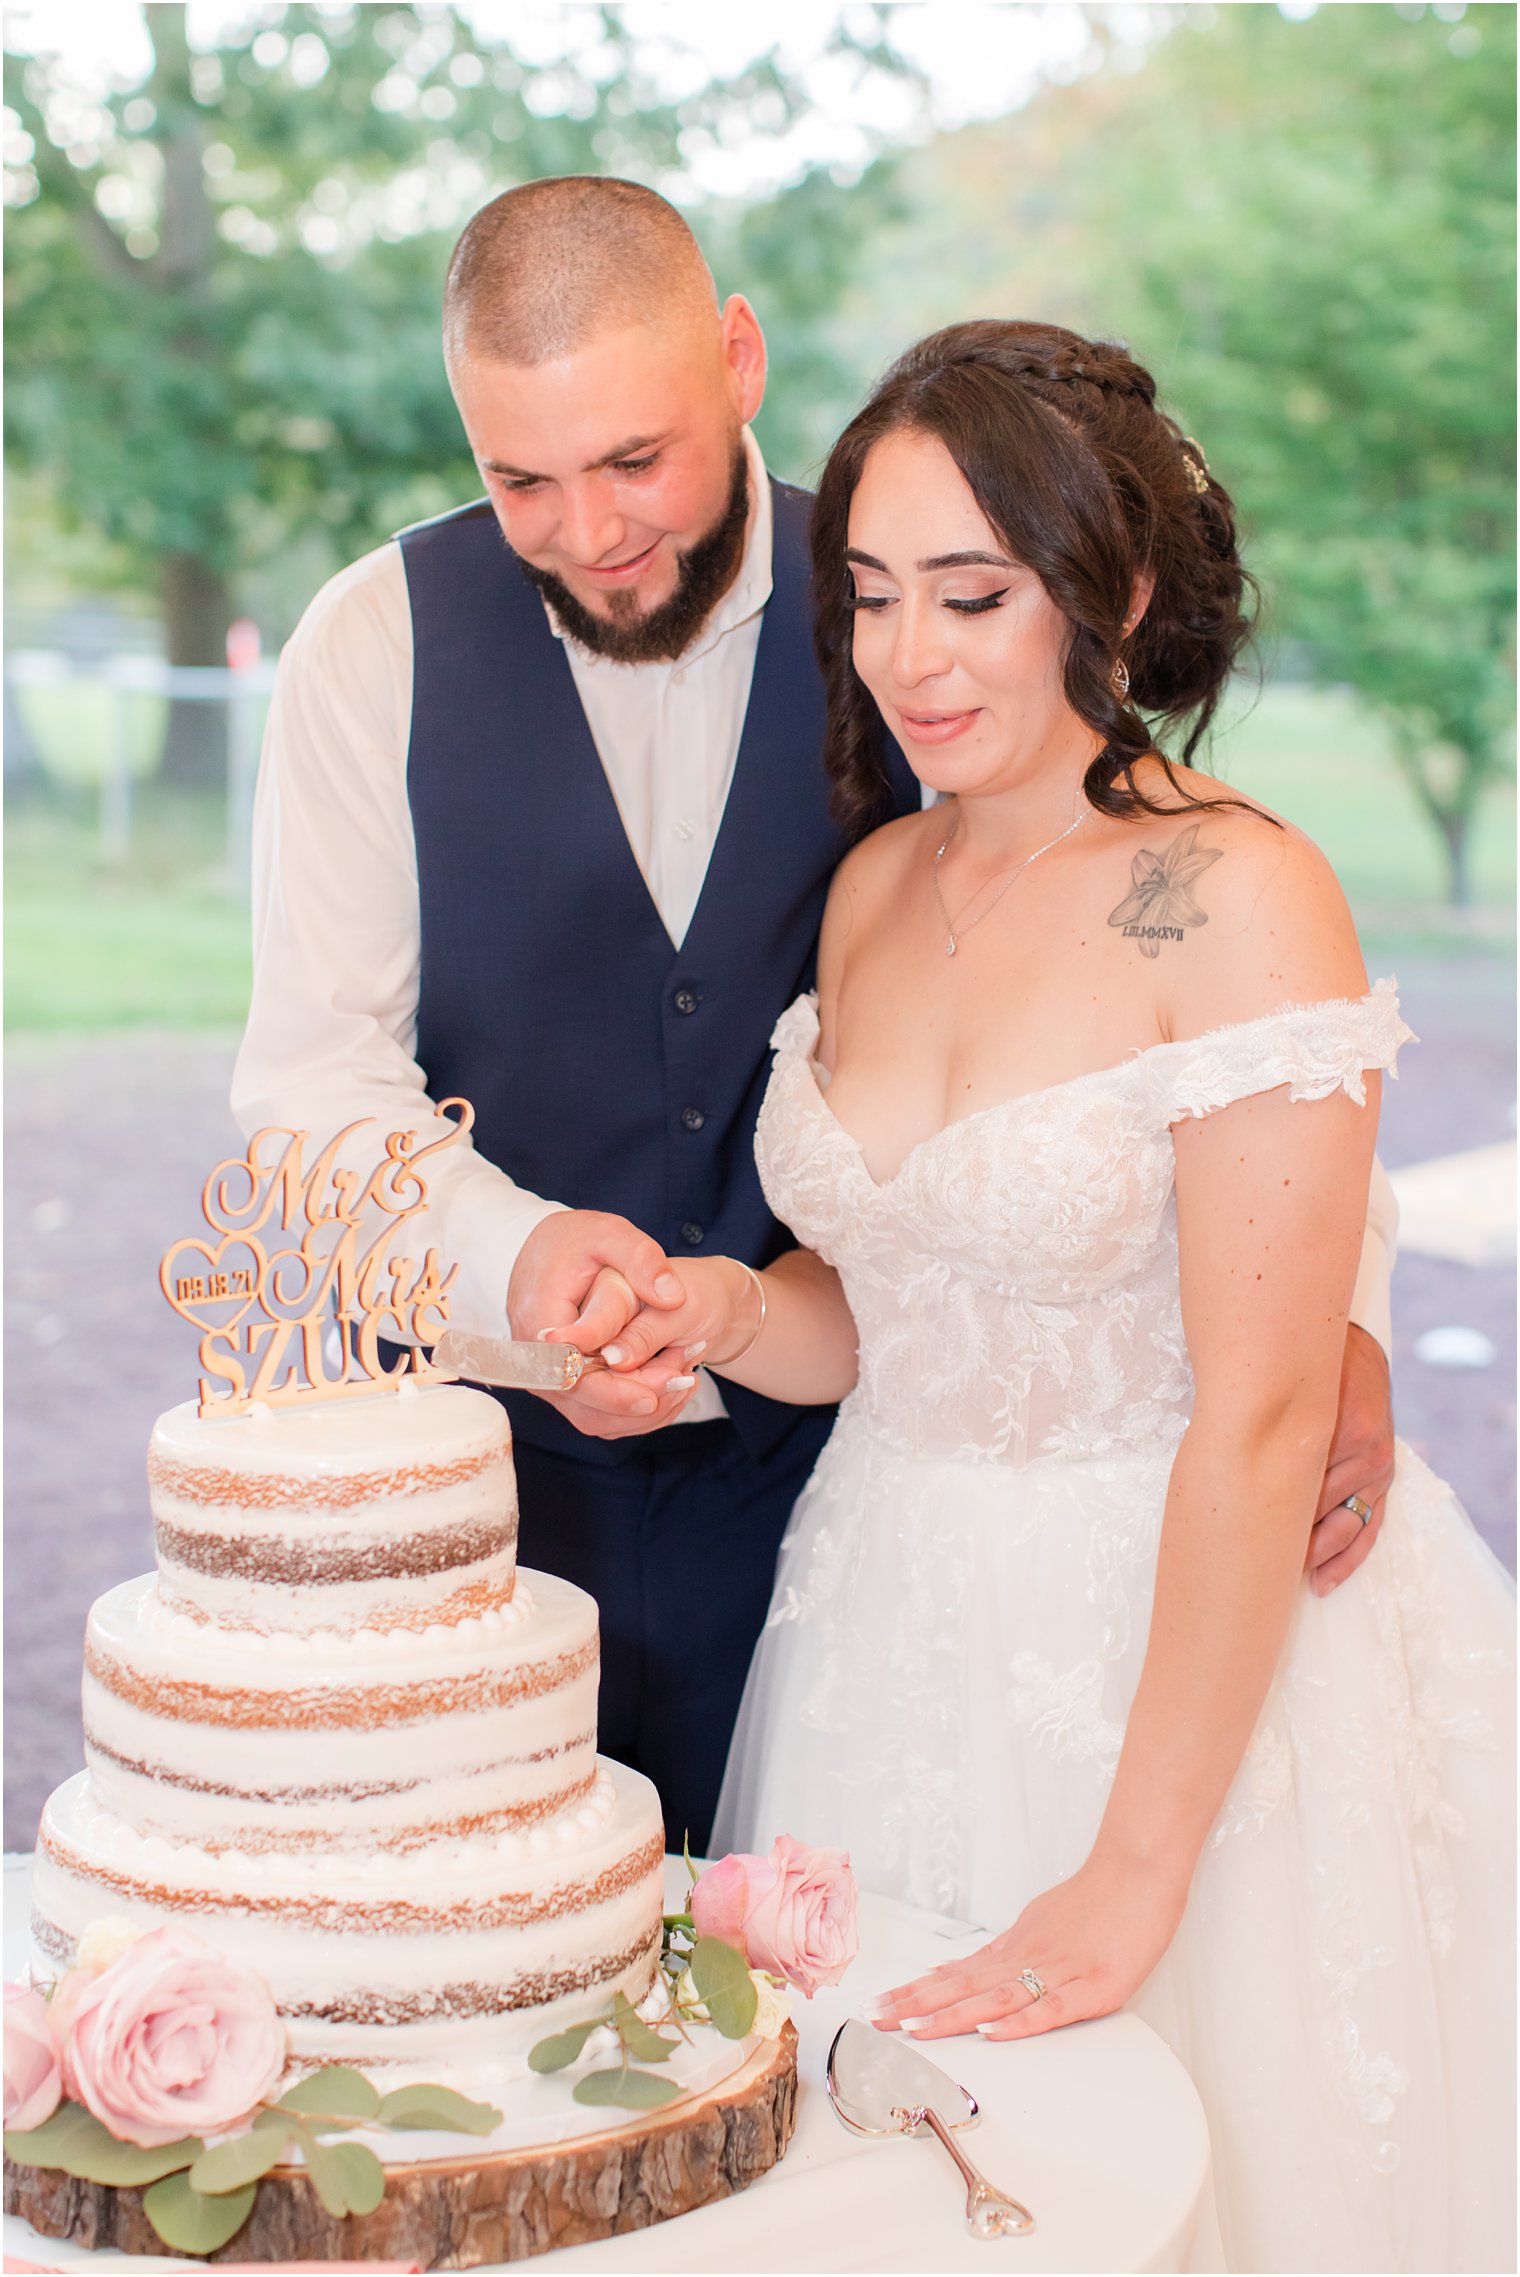 newlyweds cut naked wedding cake during NJ wedding reception 